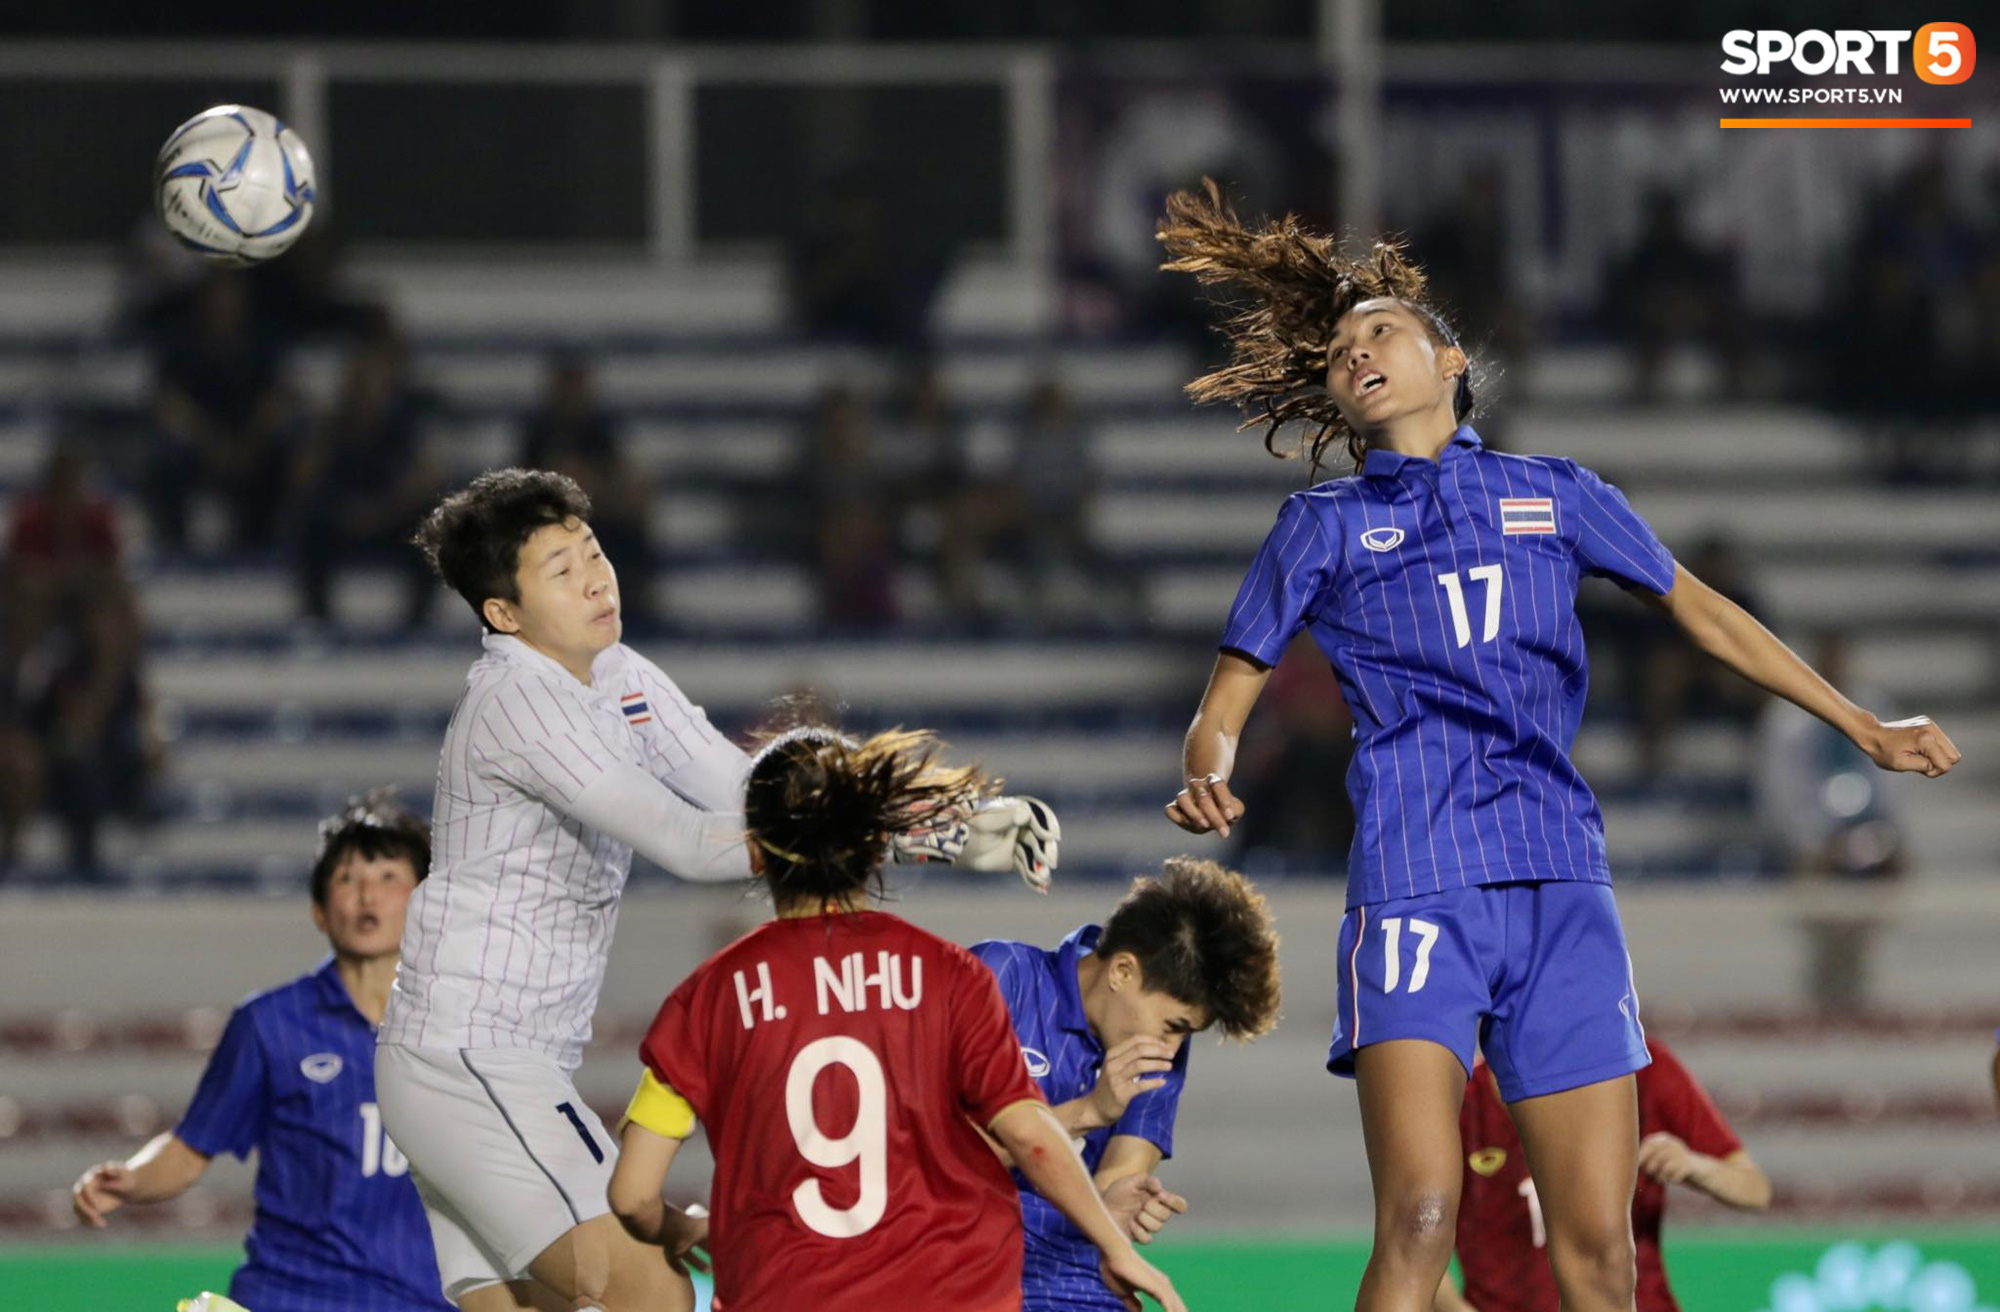 Em gái ngôi sao tuyển Thái Lan đánh đầu kiến tạo như Văn Hậu cho nữ cầu thủ Việt Nam đánh đầu tung lưới đội nhà - Ảnh 2.